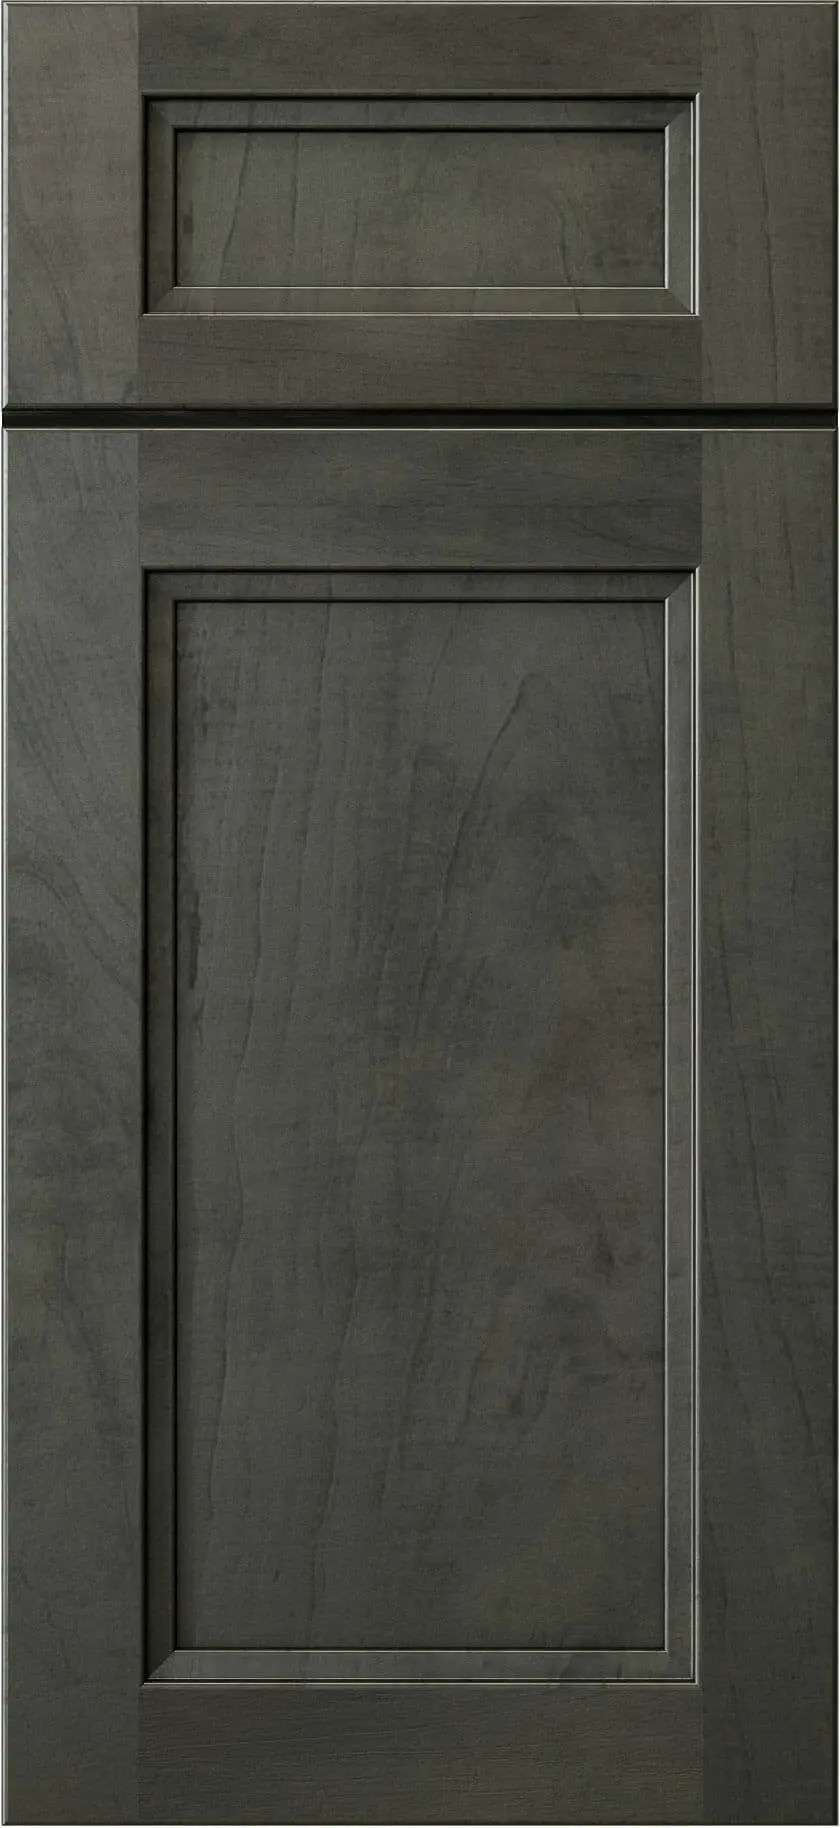 Sample Door Image